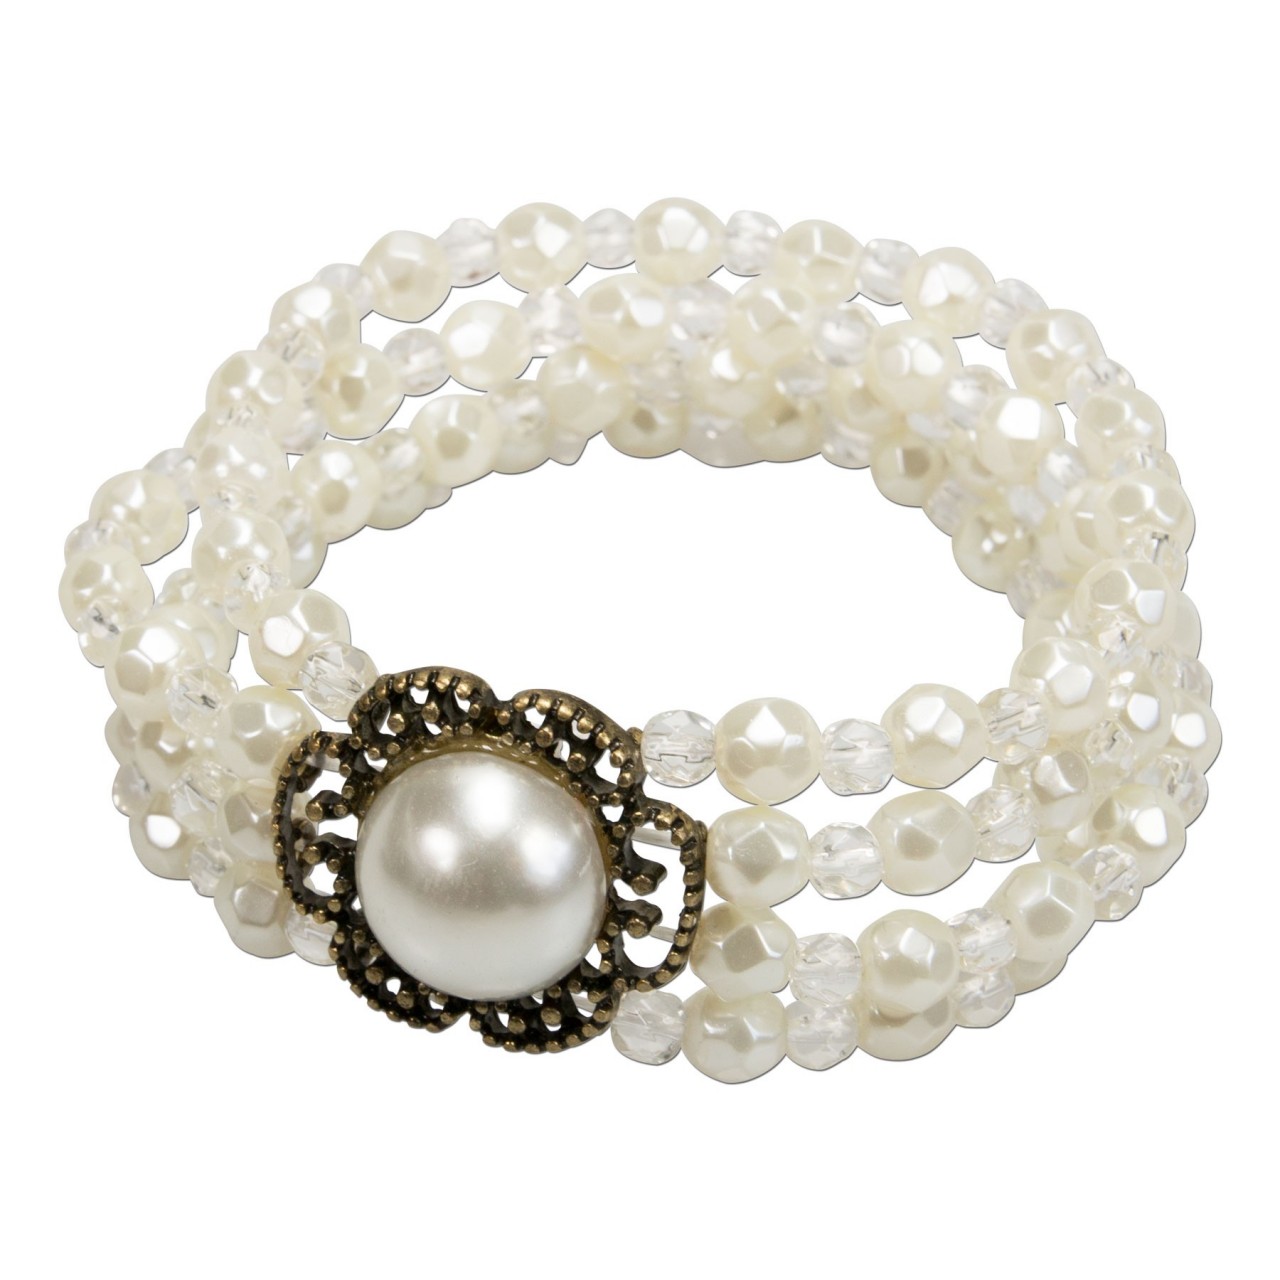 Aperçu: Bracelet en perles Ellie blanc crème